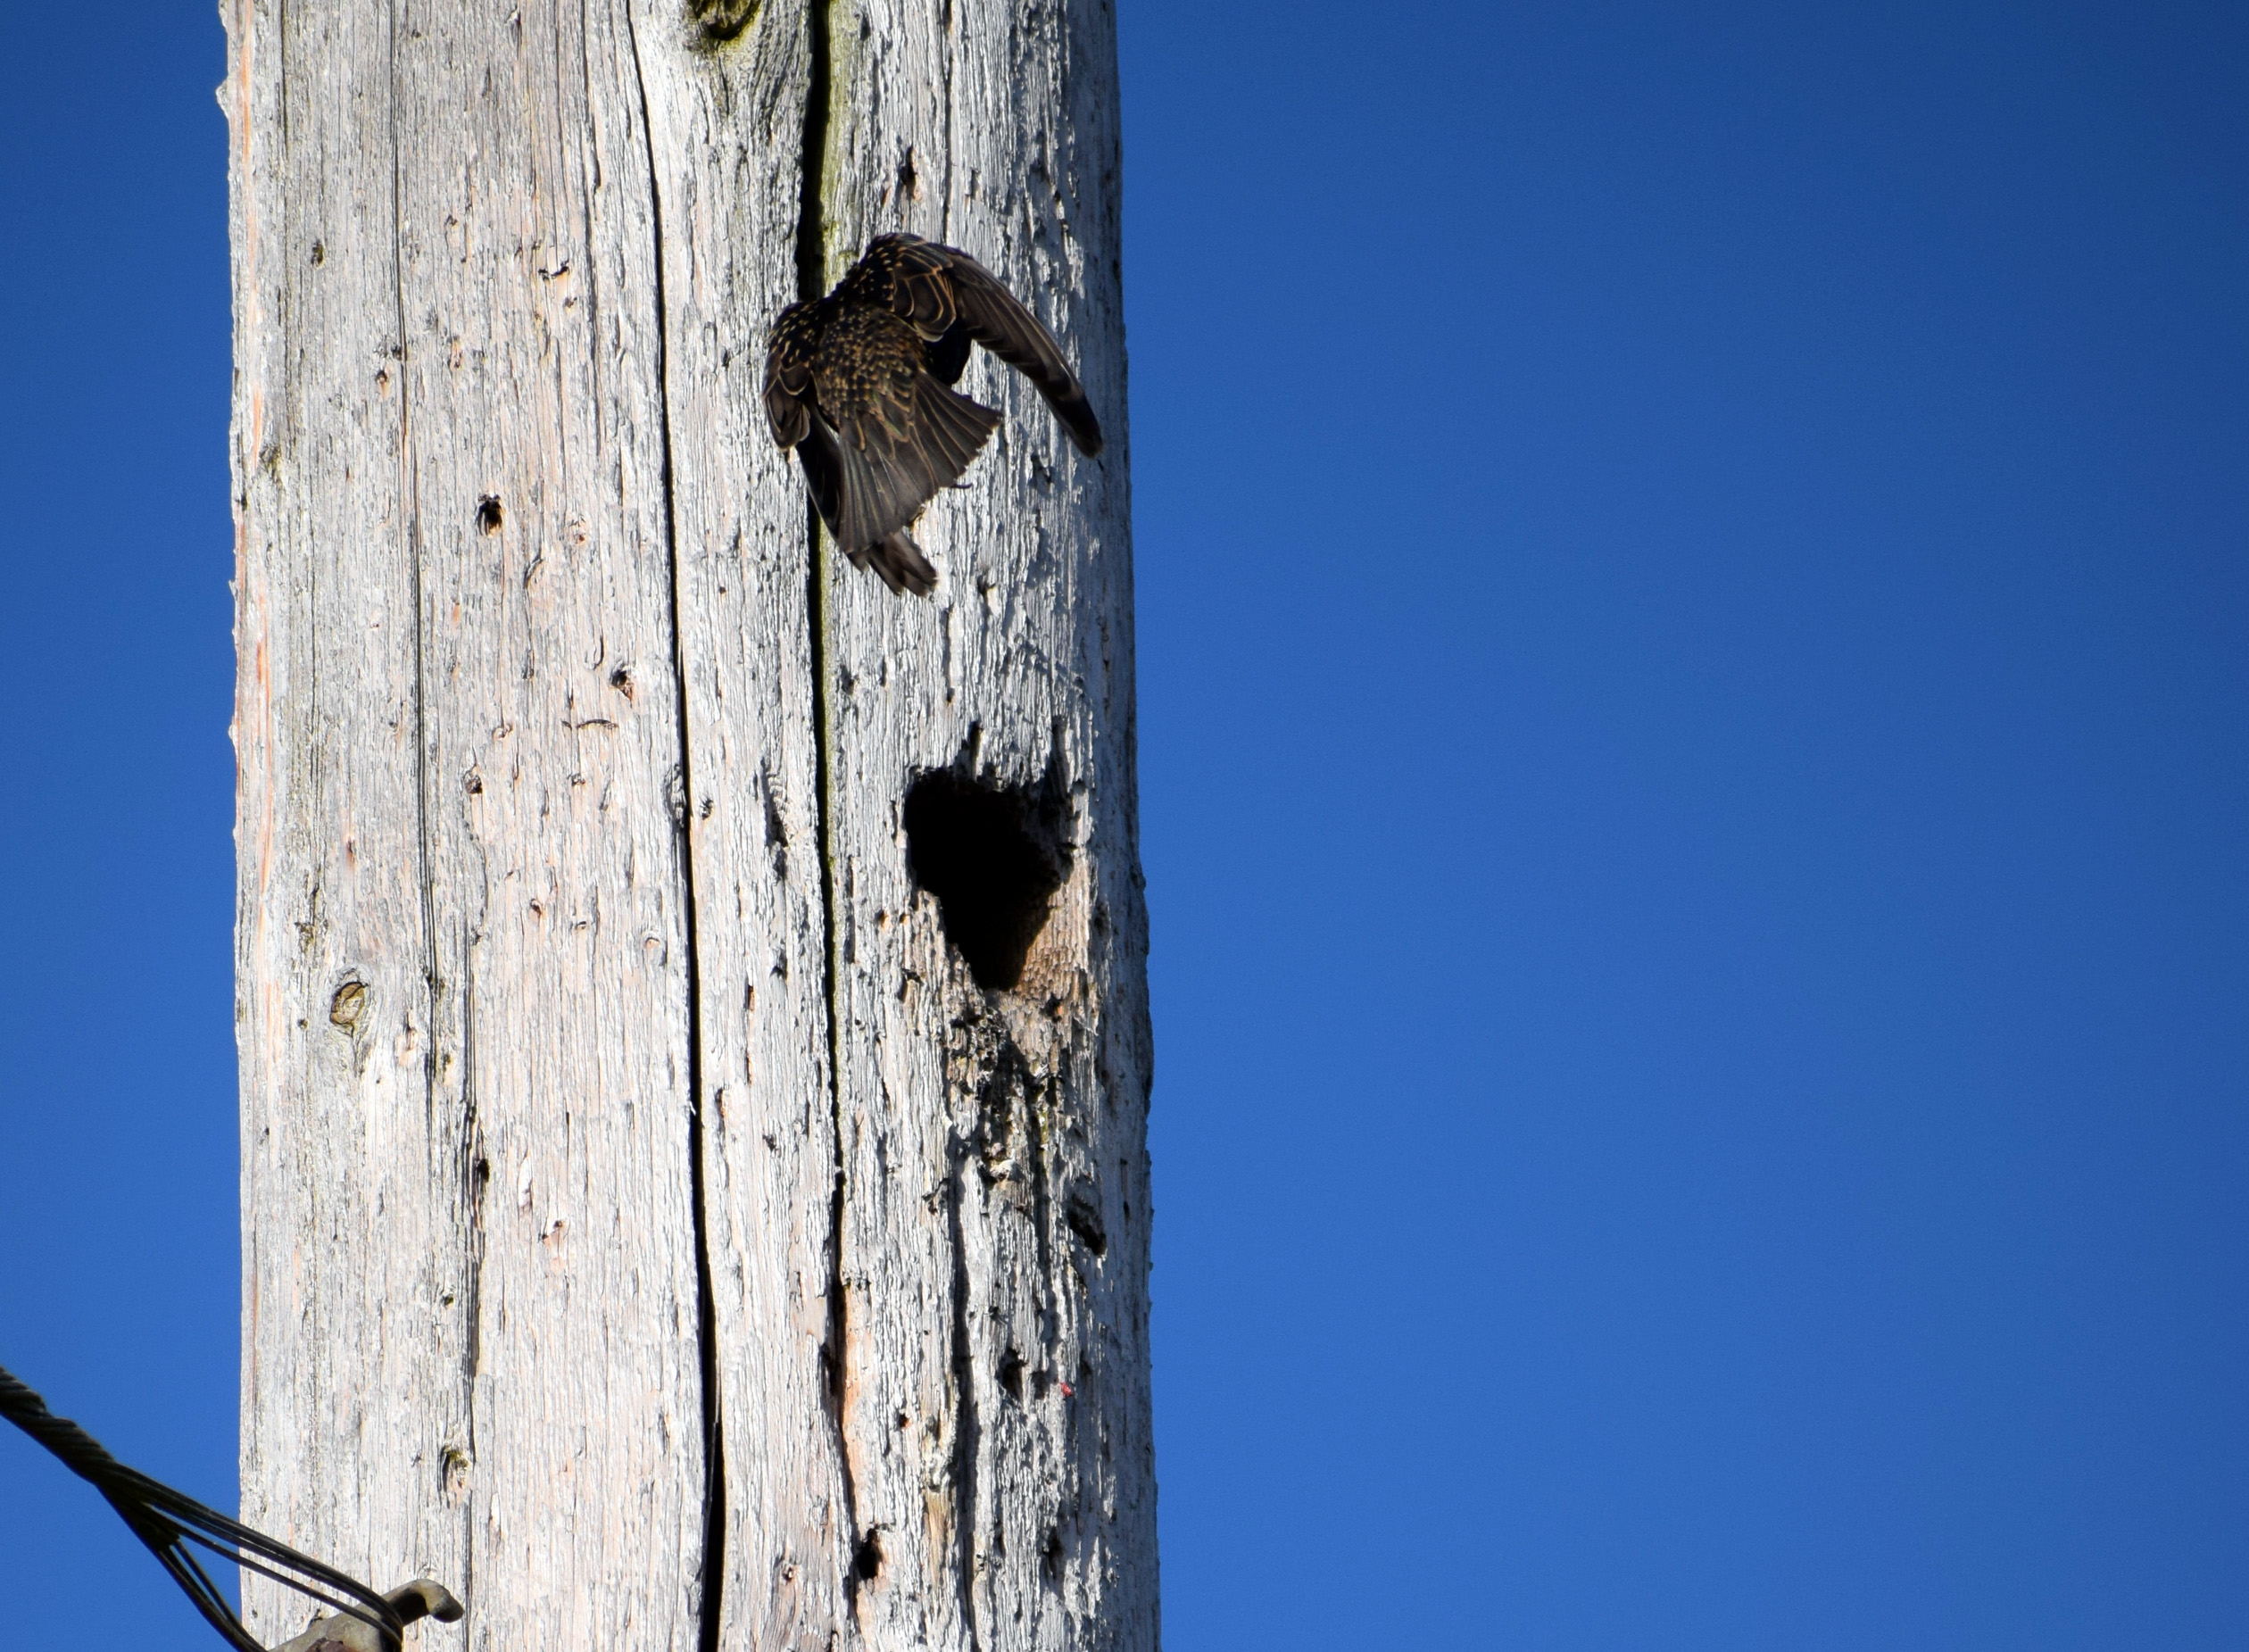 Starling braking to enter nesting cavity